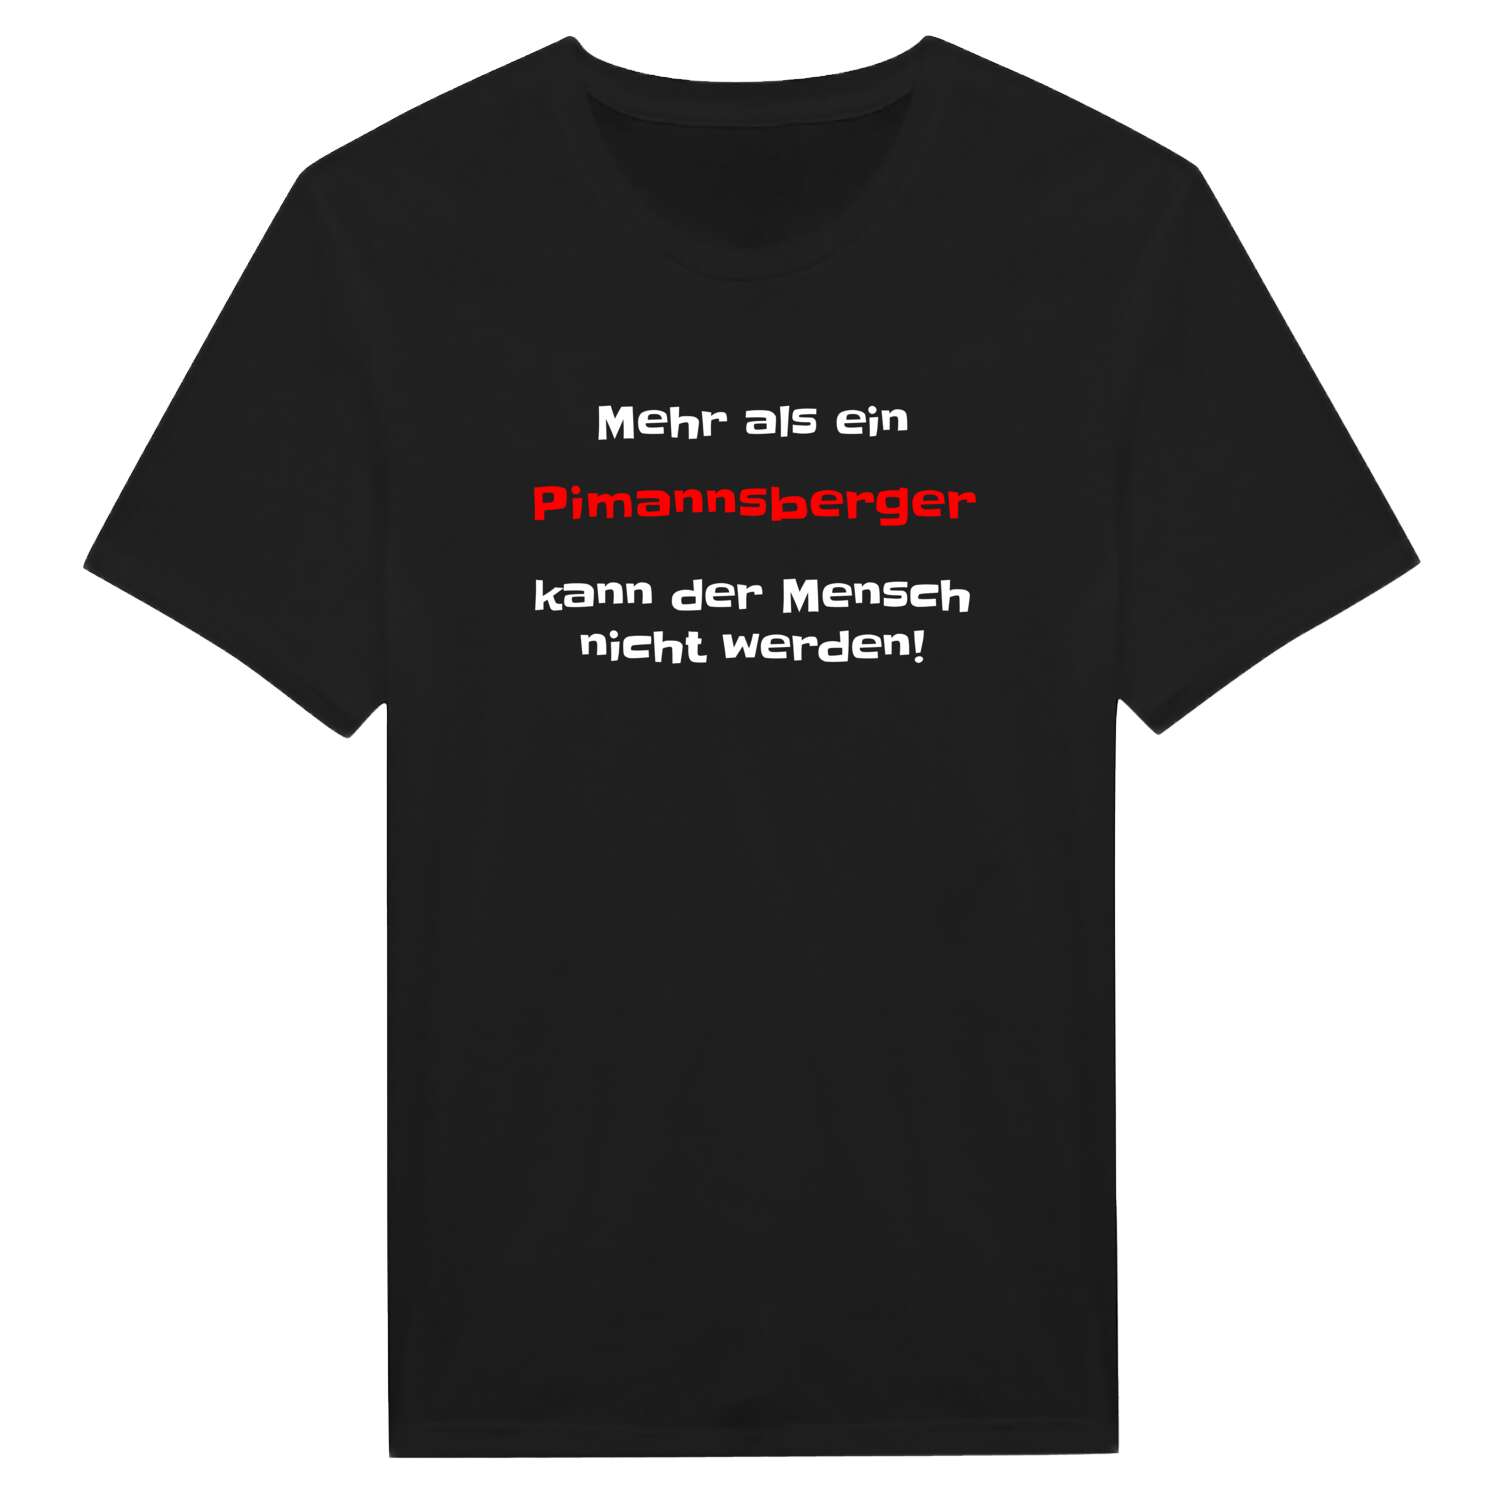 Pimannsberg T-Shirt »Mehr als ein«